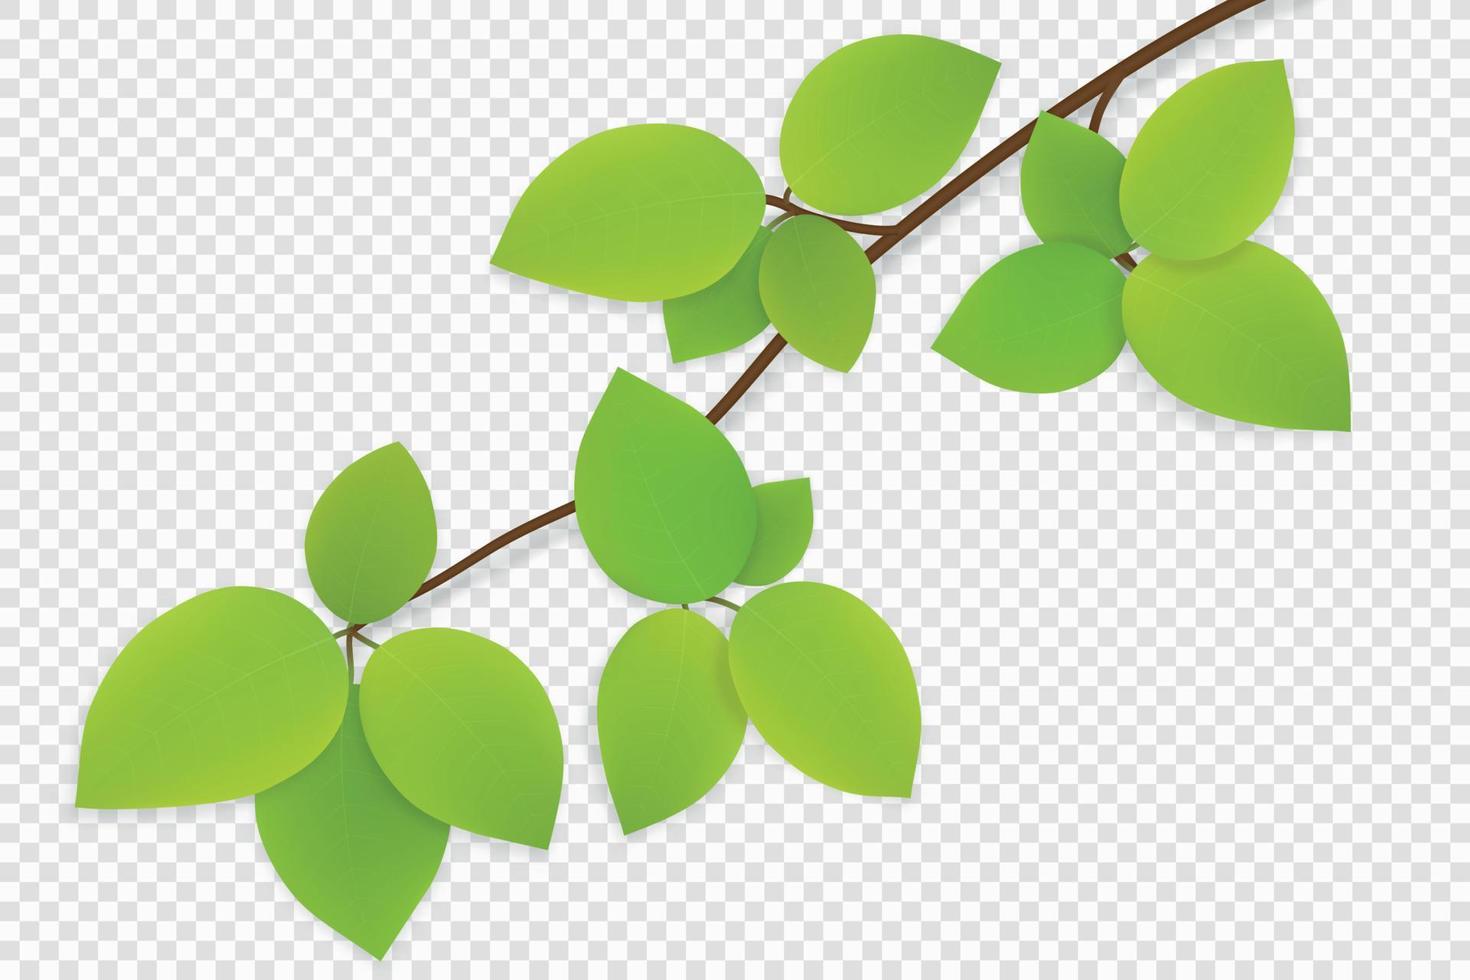 feuilles vertes sur une branche d'arbre isolée vecteur